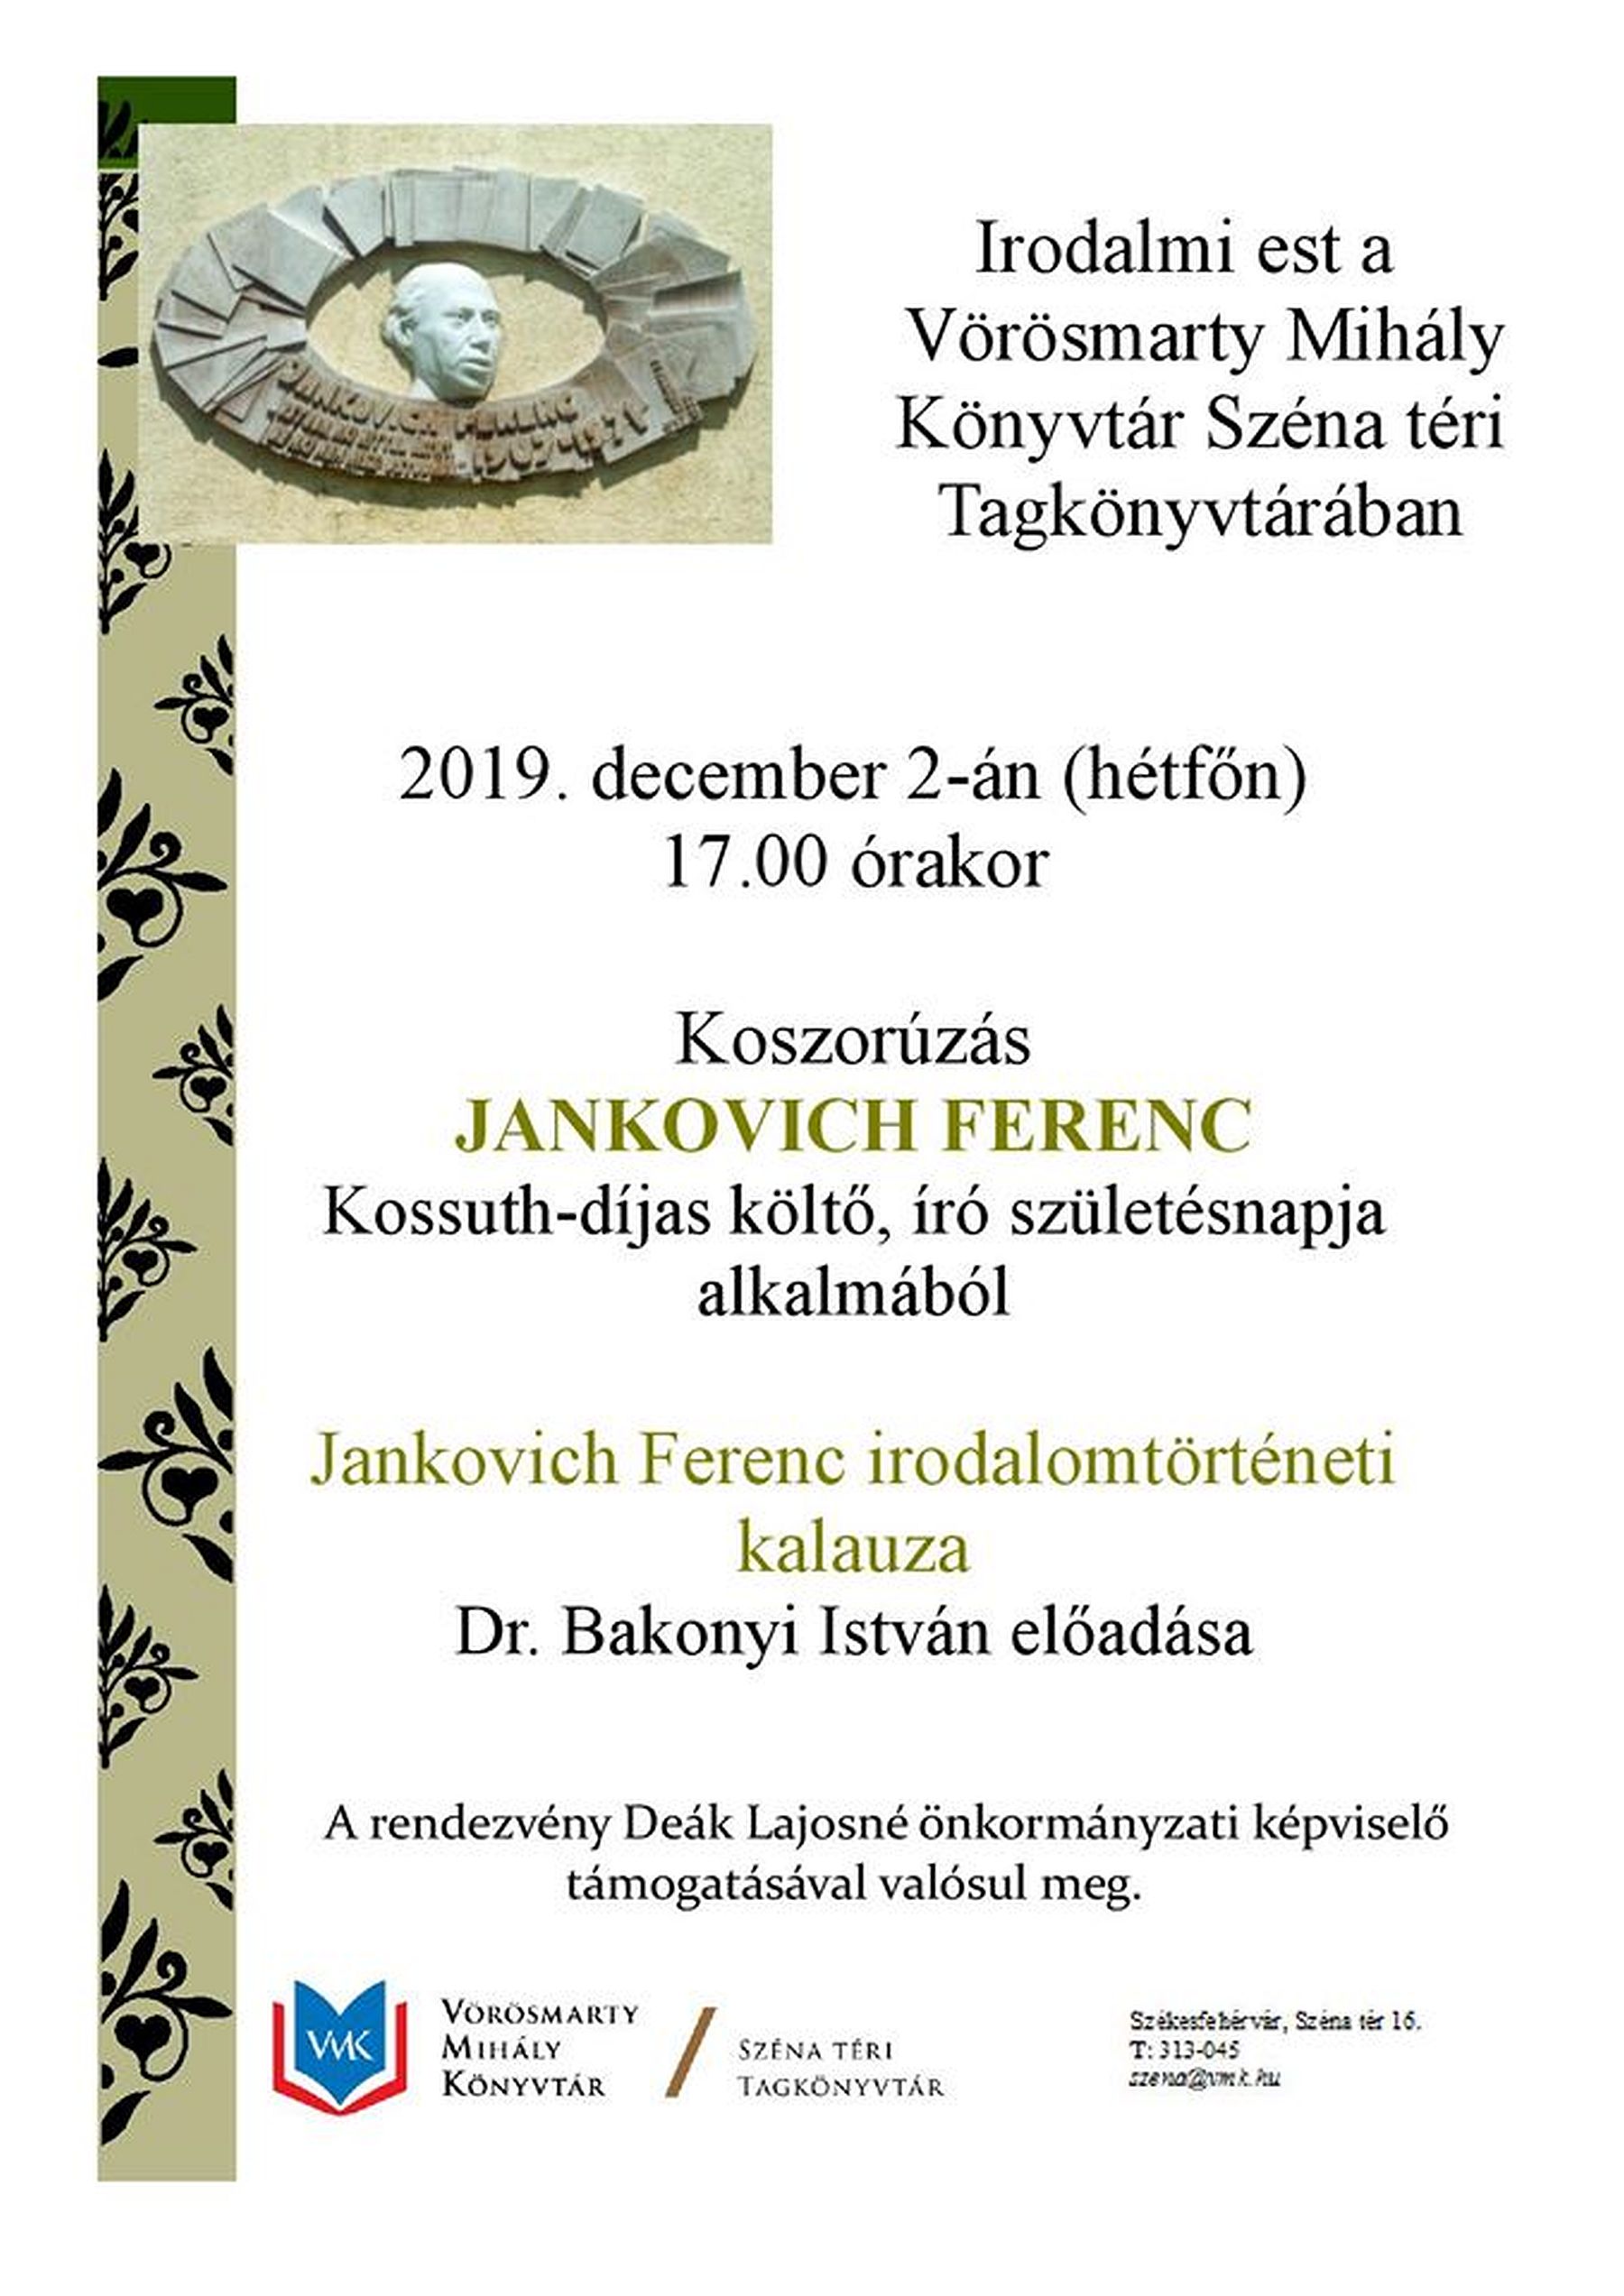 Megemlékezés és előadás Jankovich Ferenc Kossuth-díjas író, költő születésnapján